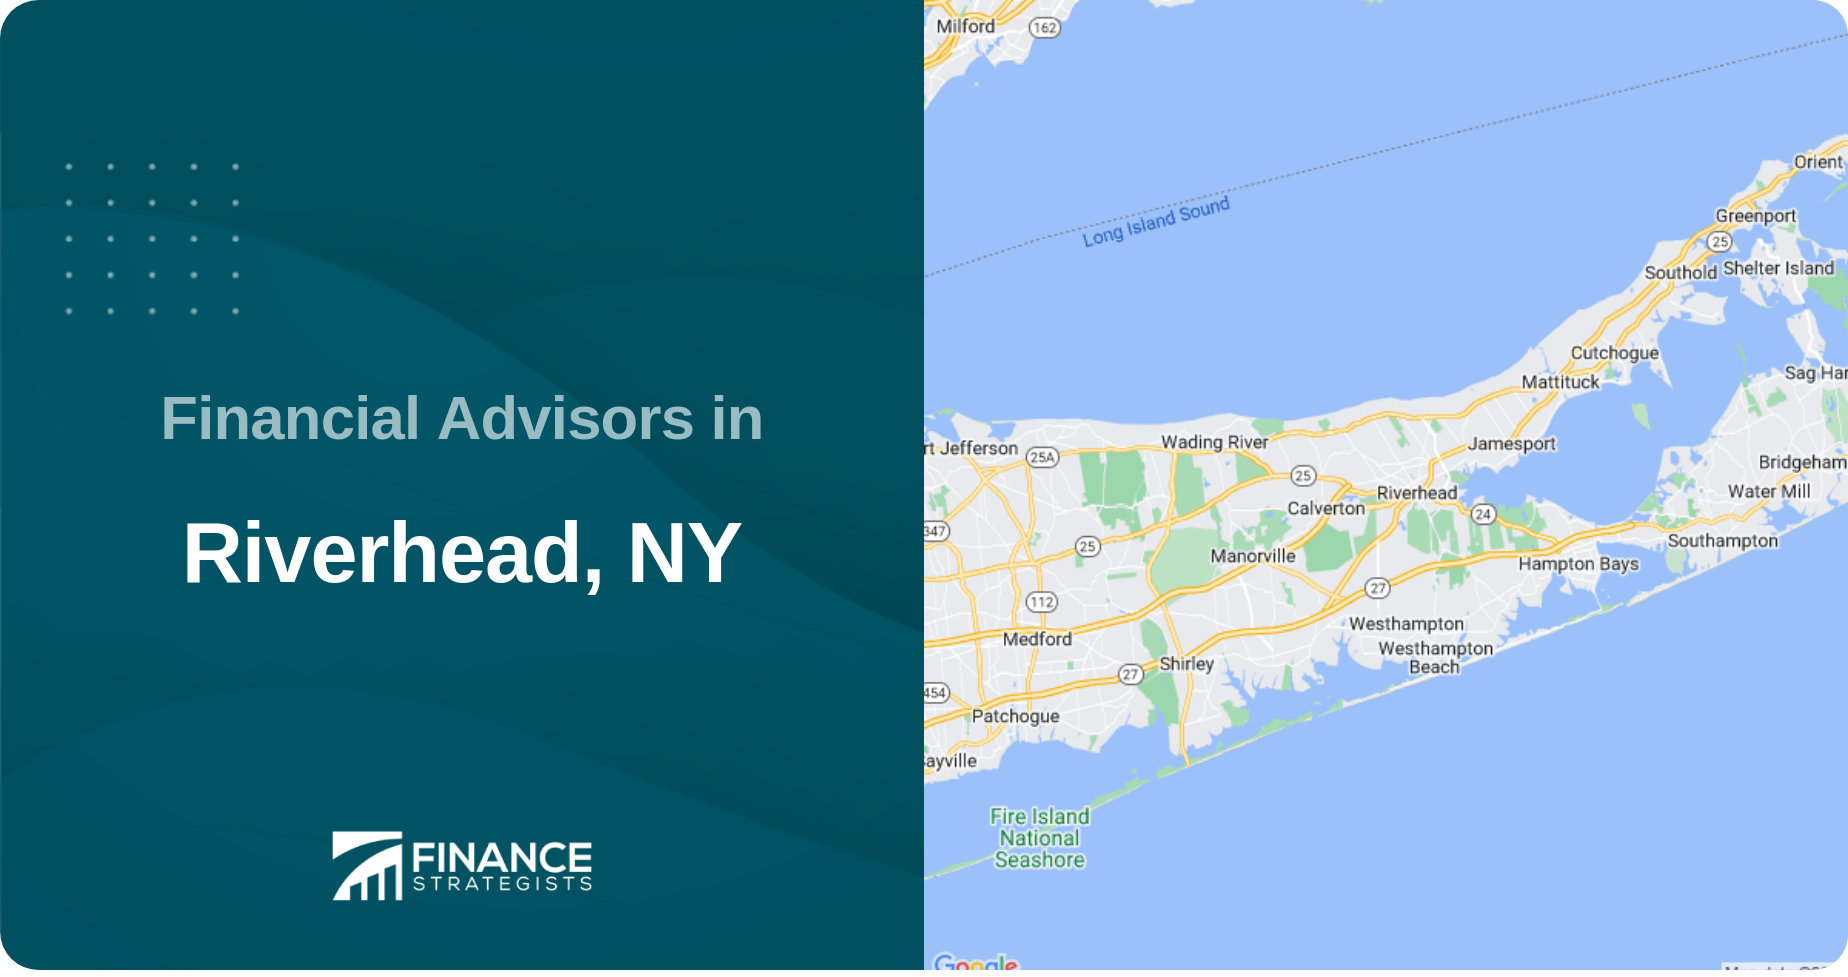 Financial Advisors in Riverhead, NY